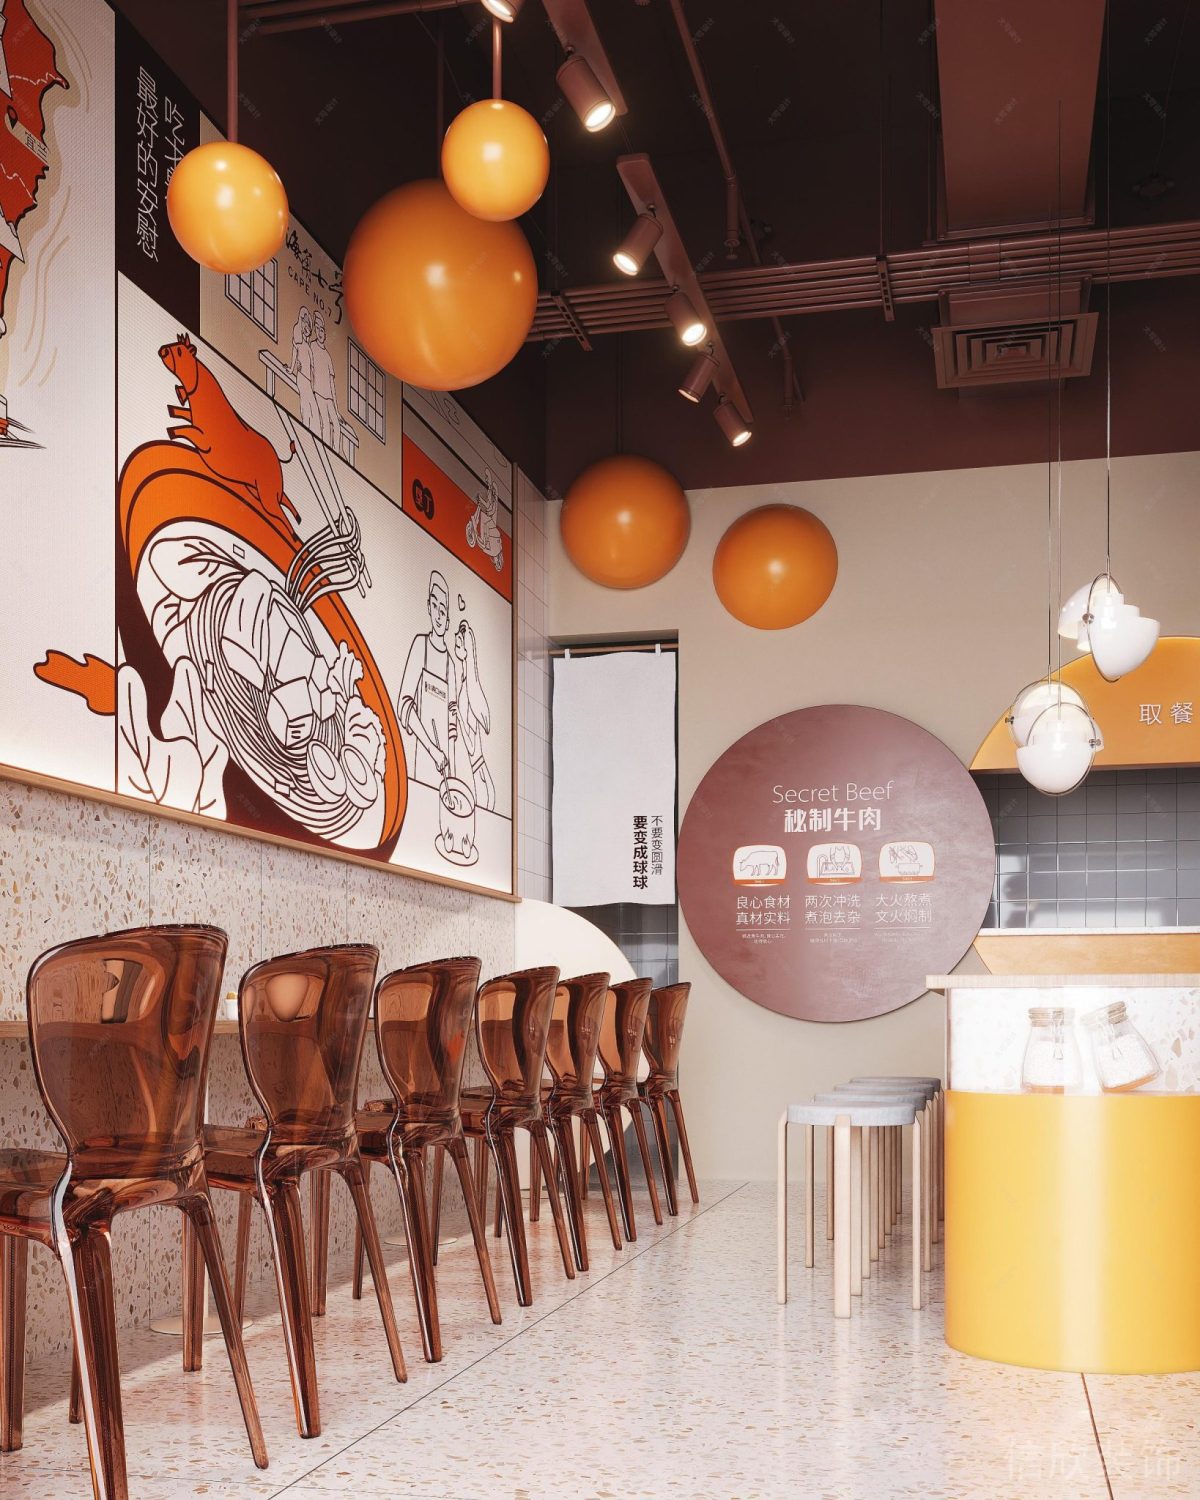 深圳龙岗布吉小两口米线橙色面馆墙面主题宣传画圆球灯泡装修设计